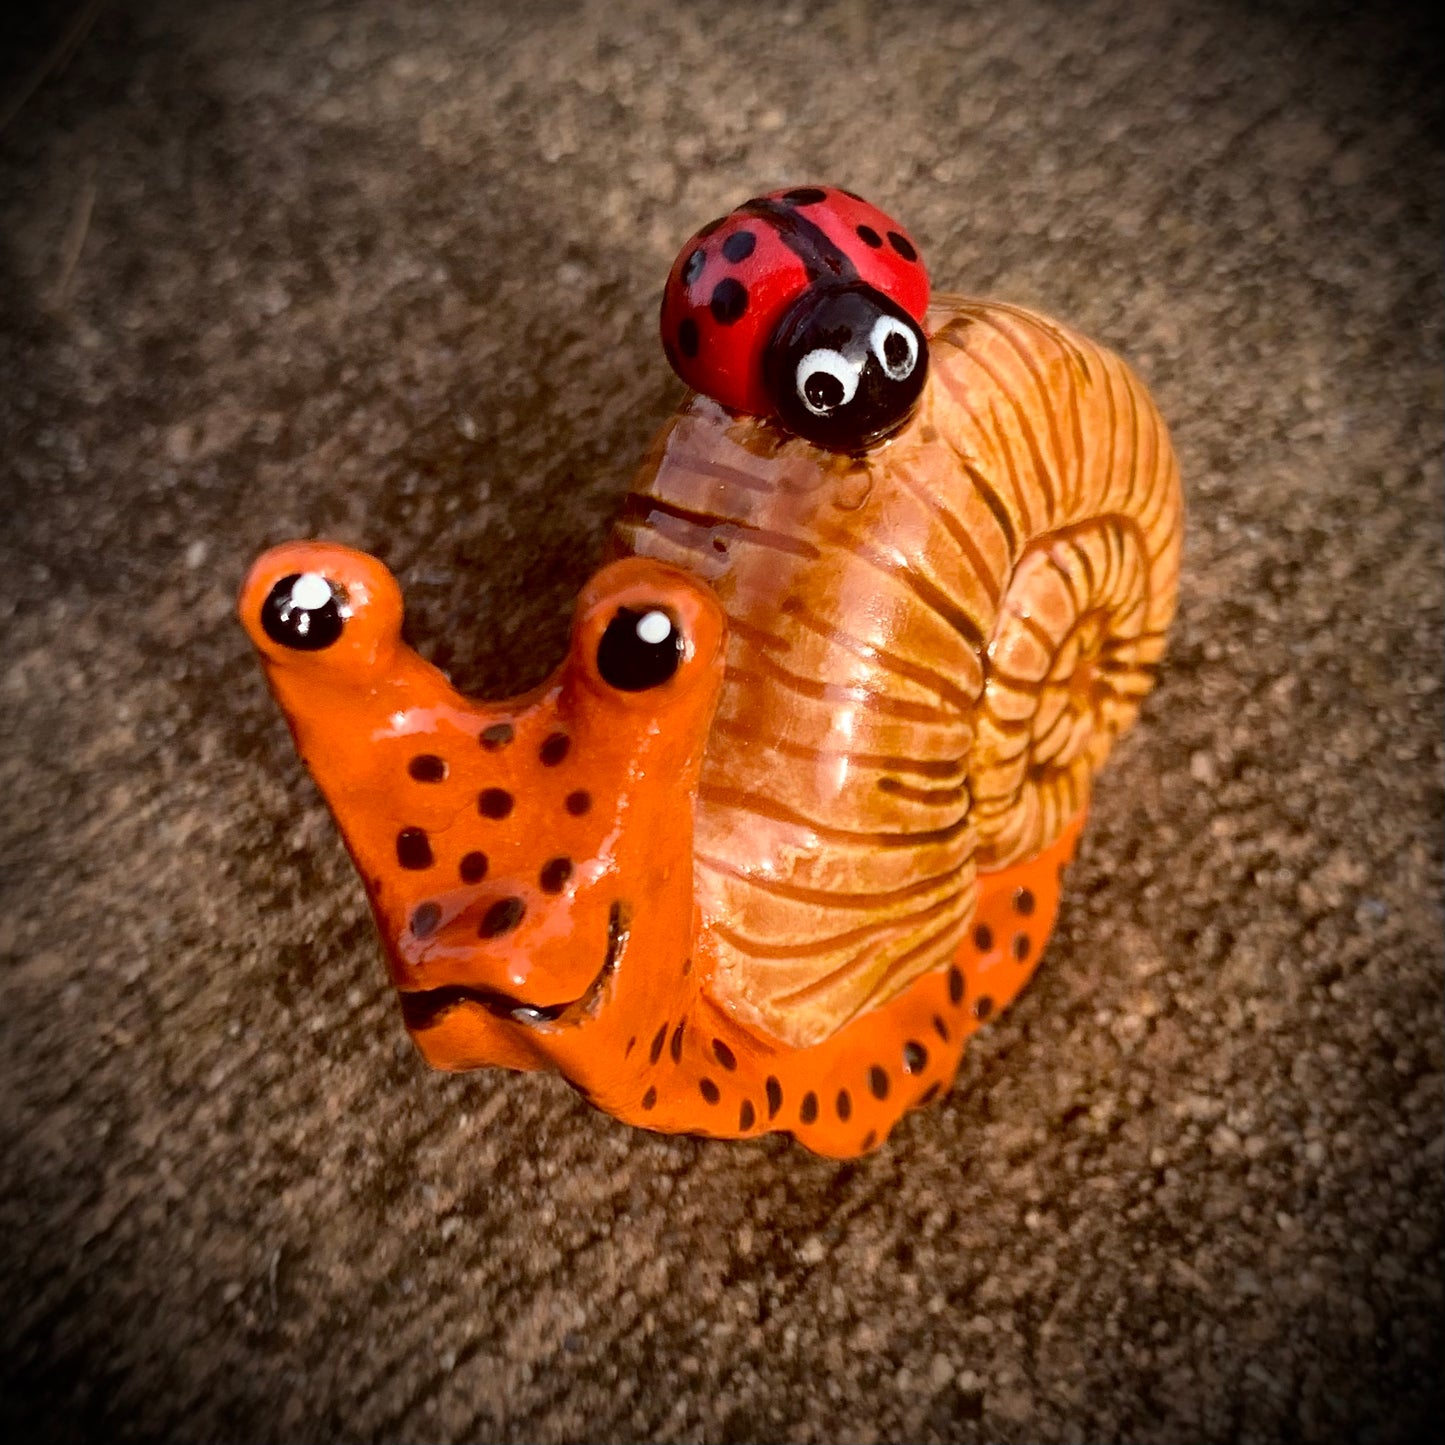 Snails with Ladybug